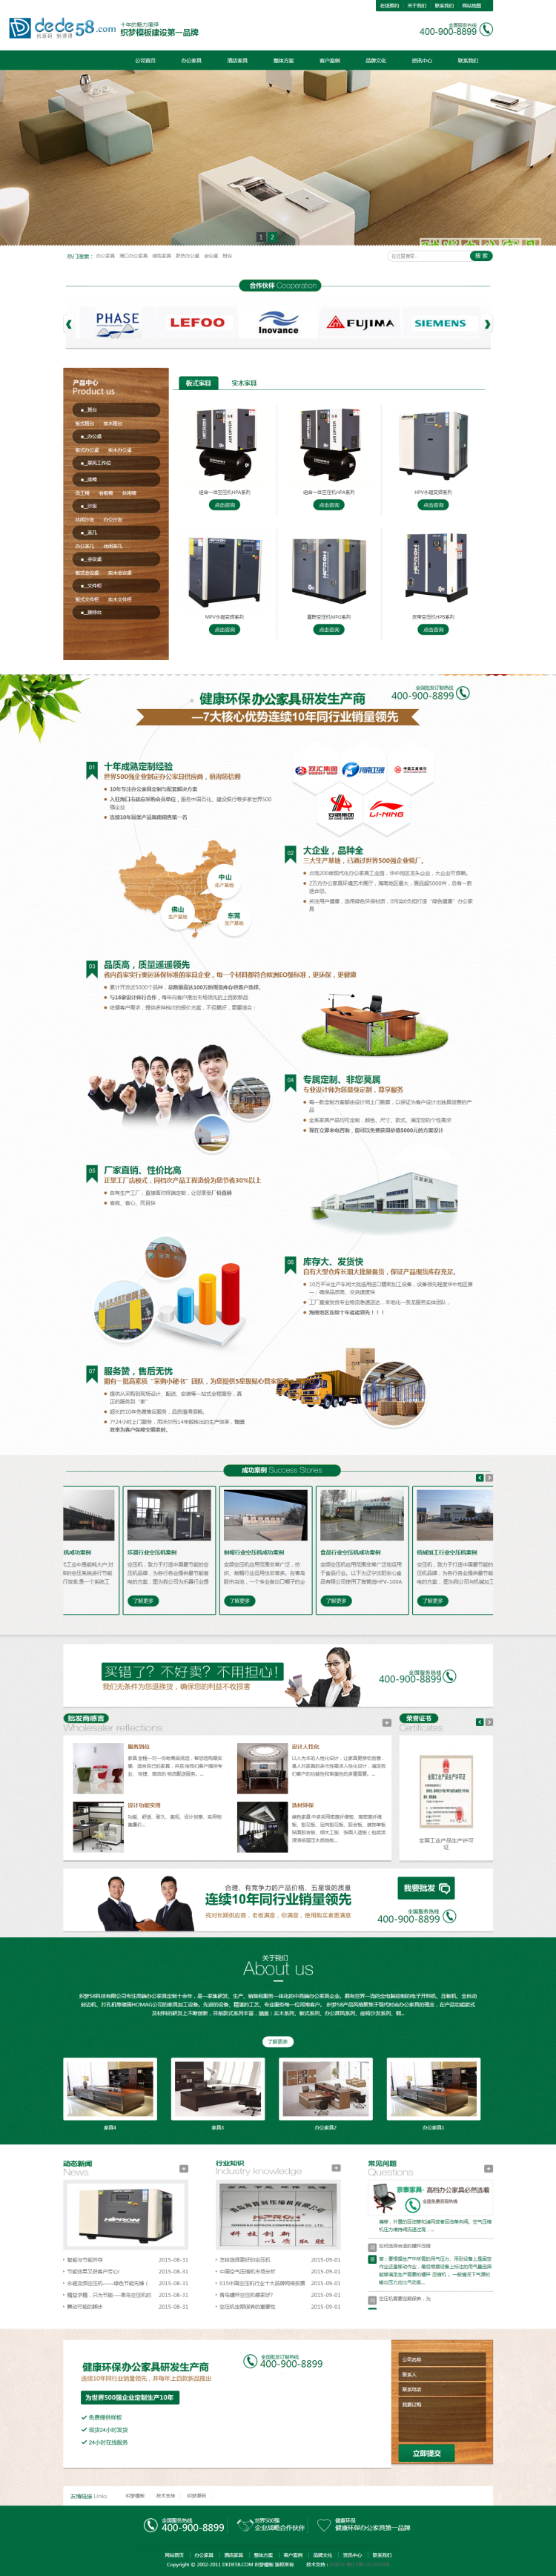 绿色办公家居家具营销类企业通用网站织梦模板 第1张